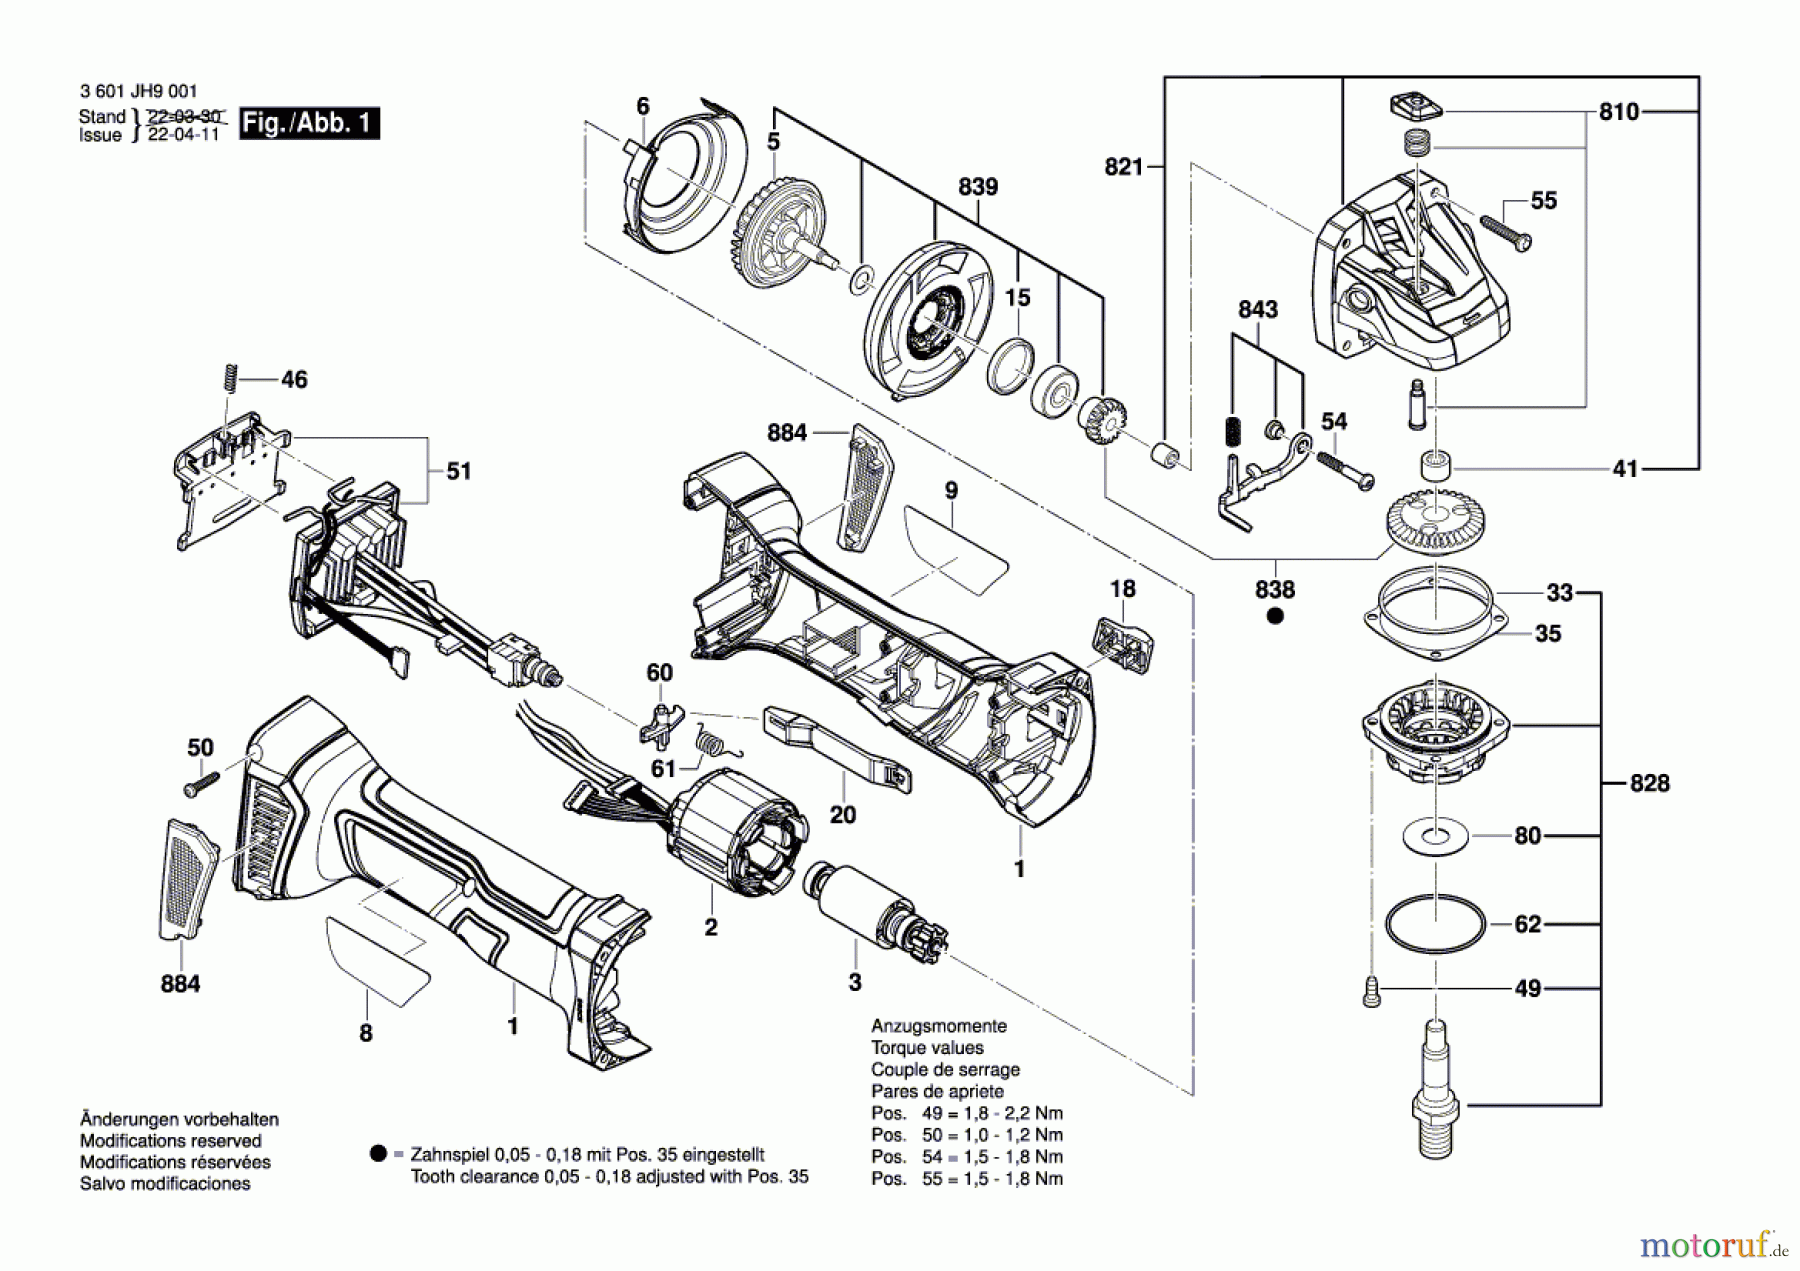  Bosch Akku Werkzeug Akku-Winkelschleifer 5331 Seite 1